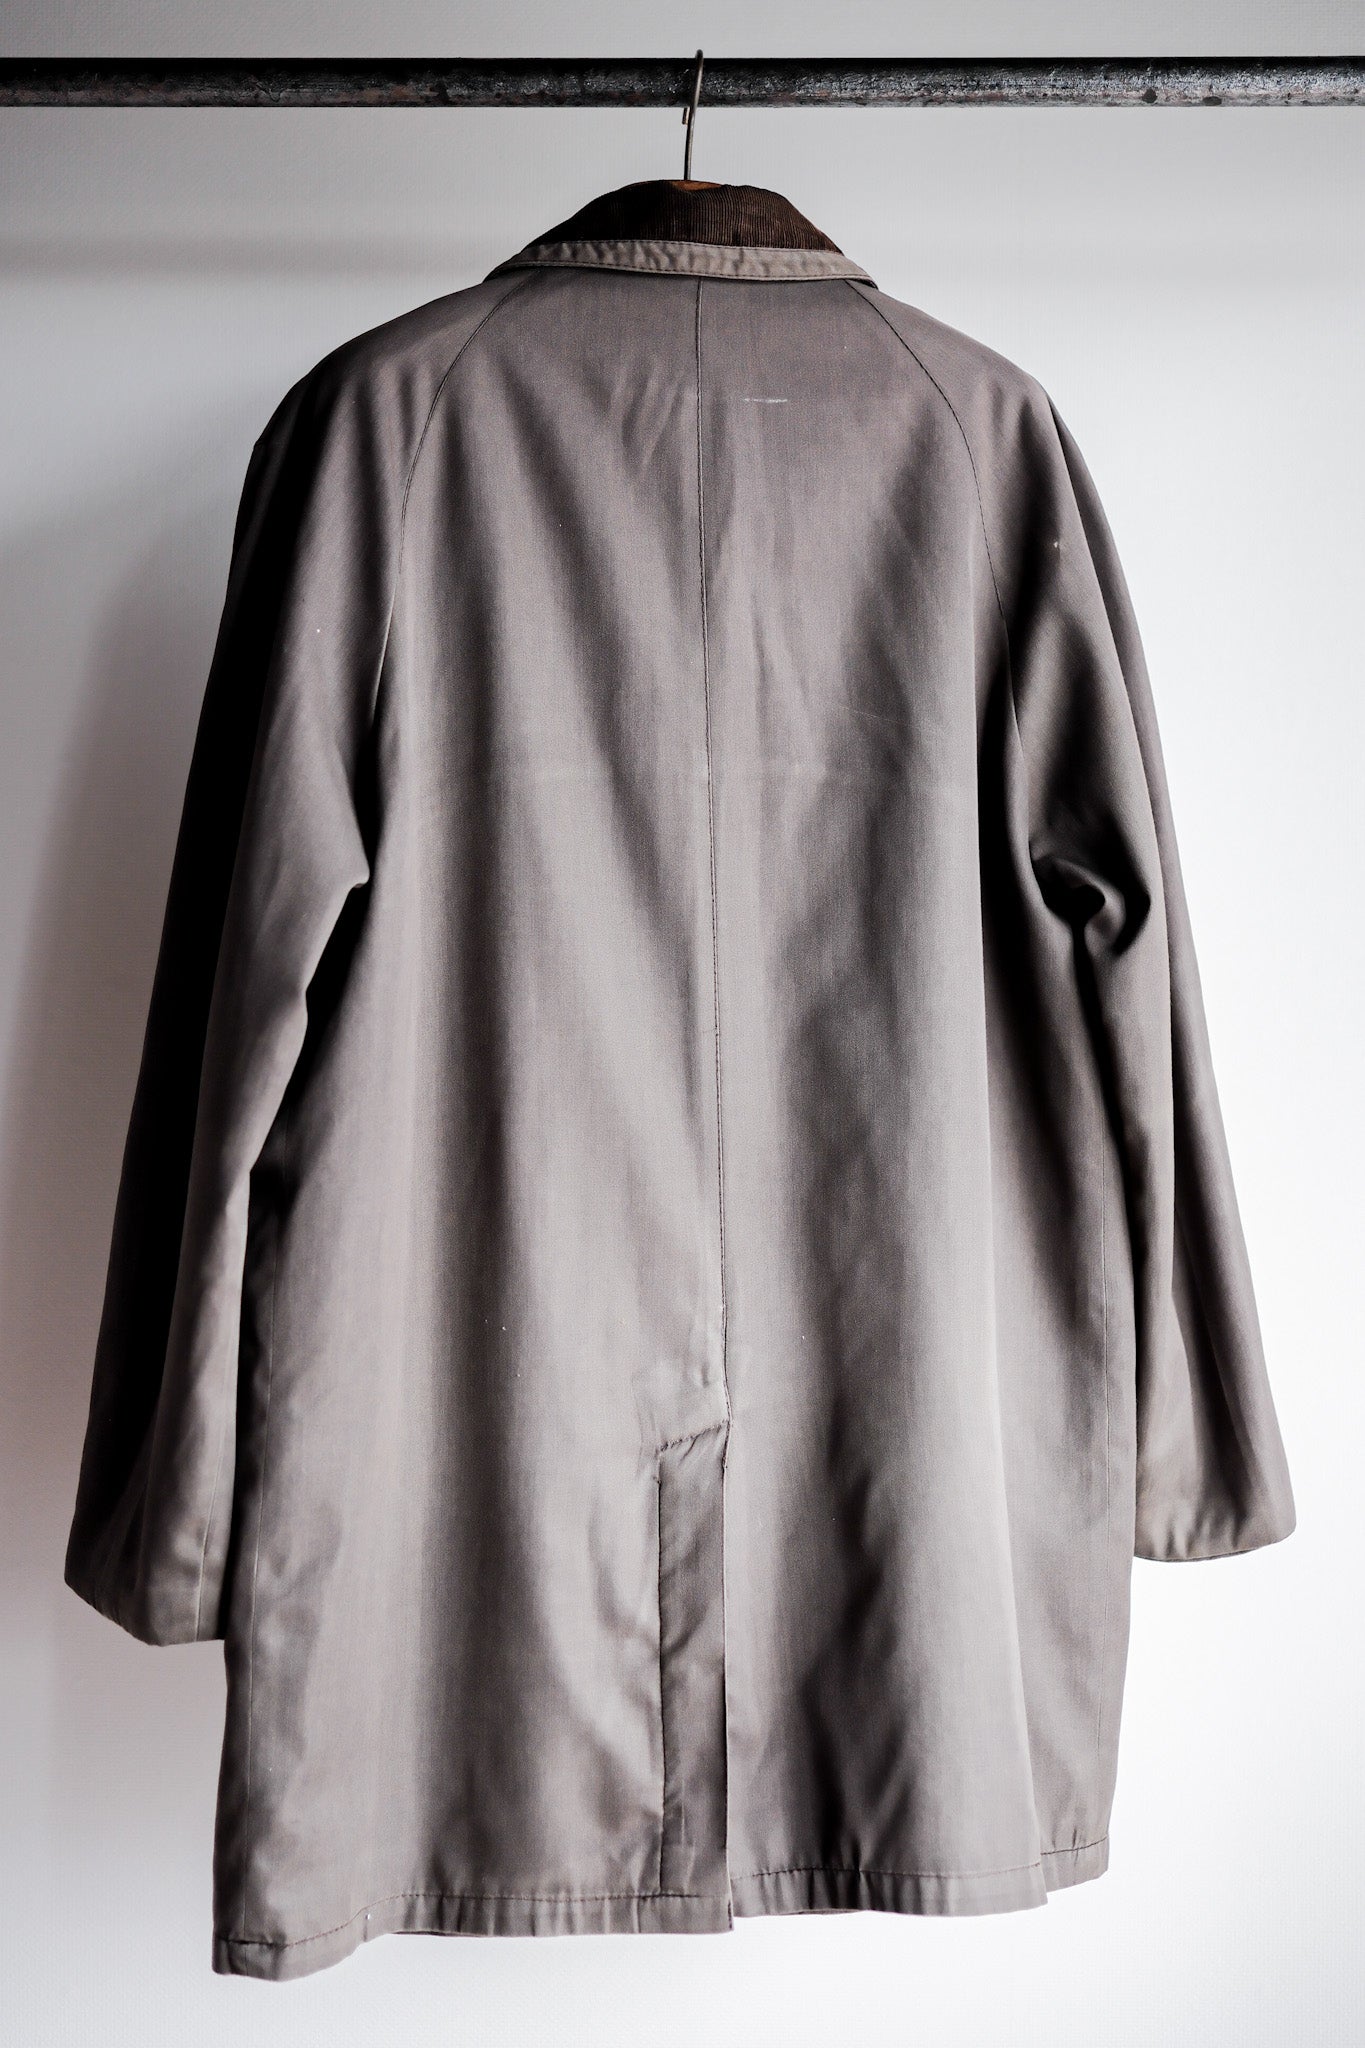 [〜70年代]復古grenfell戶外半外套。42“山地標籤”